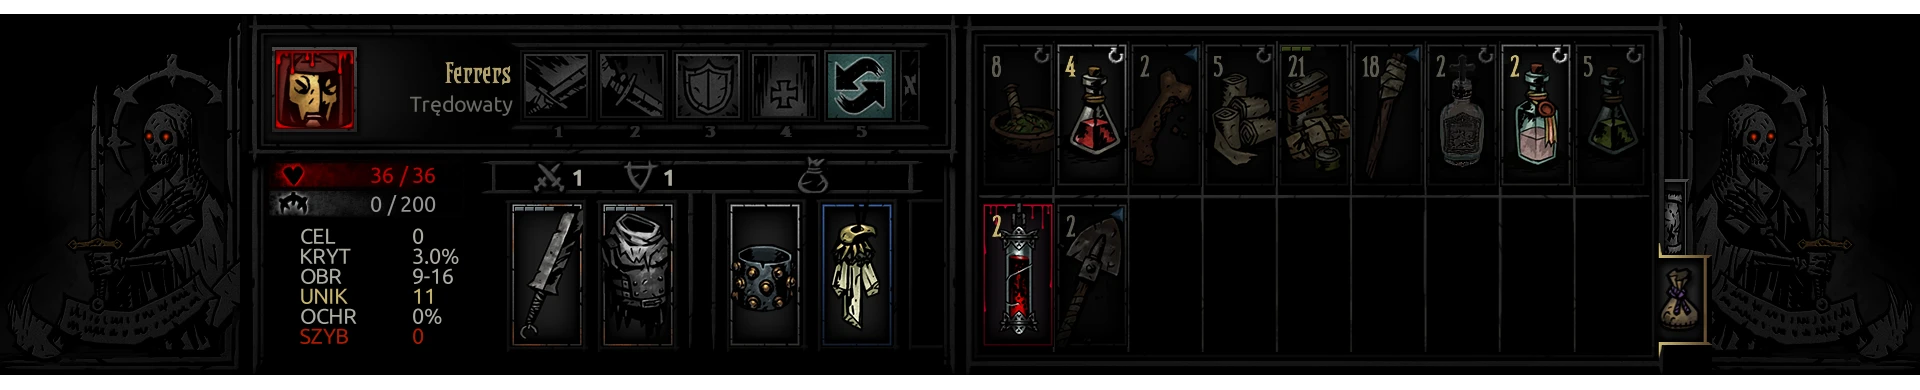 darkest dungeon larger inventory mod